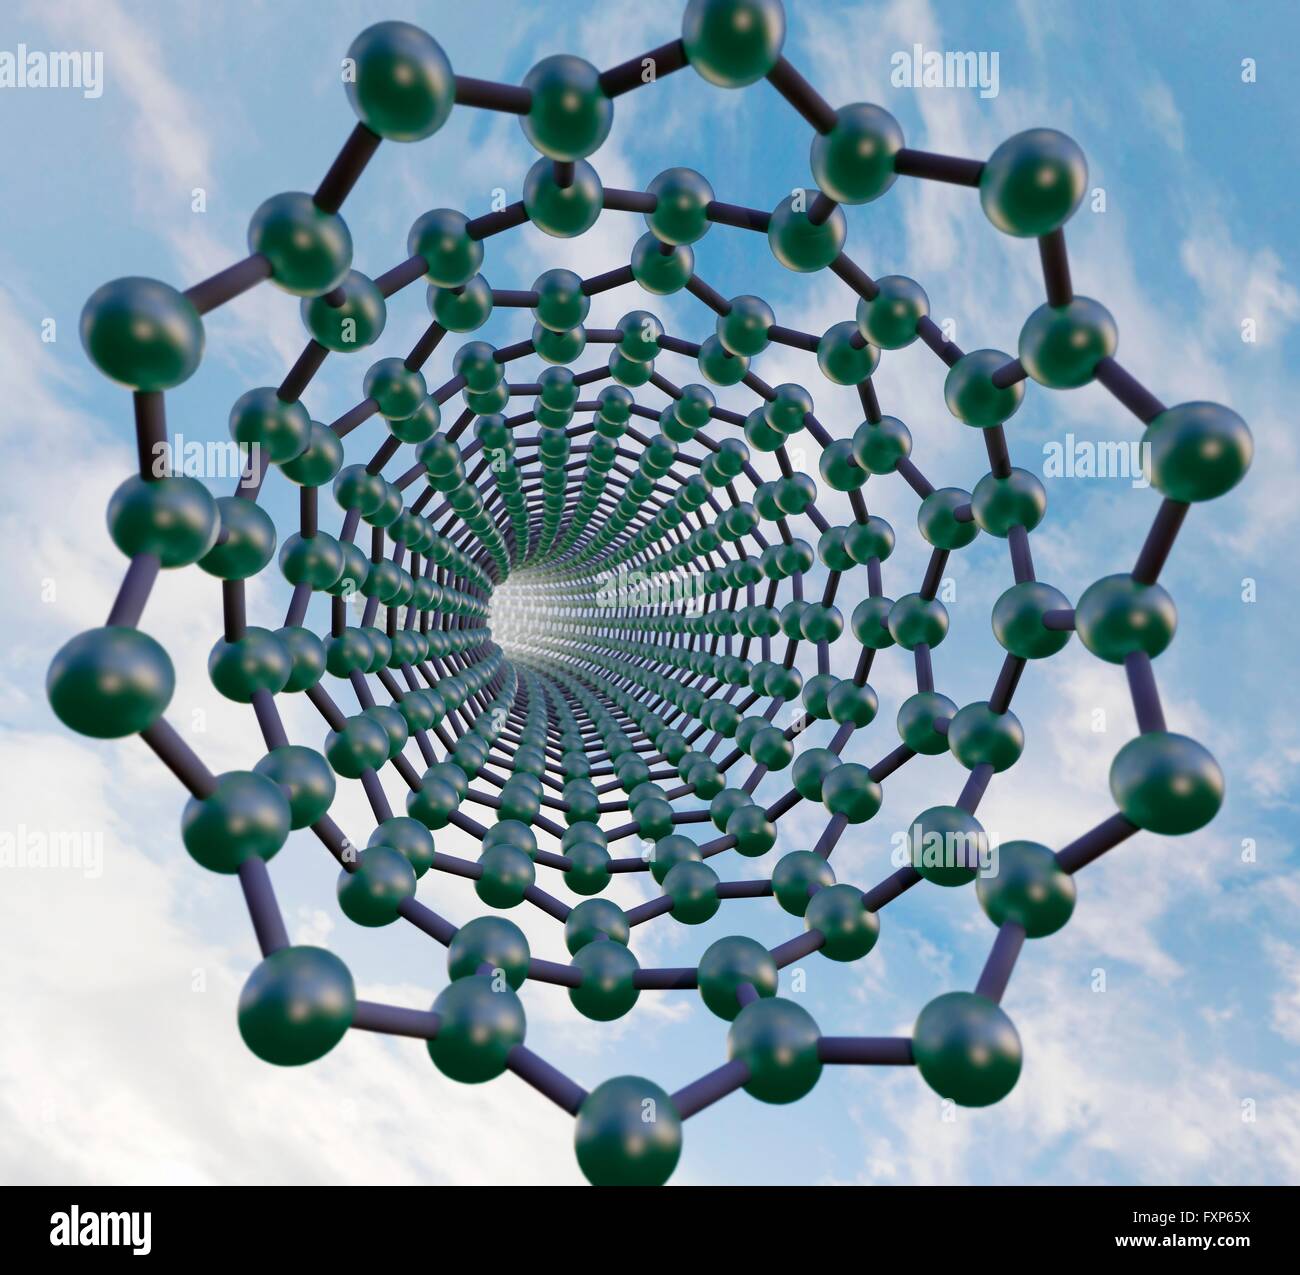 Graphen Nanotube, Molekülmodell. Stockfoto